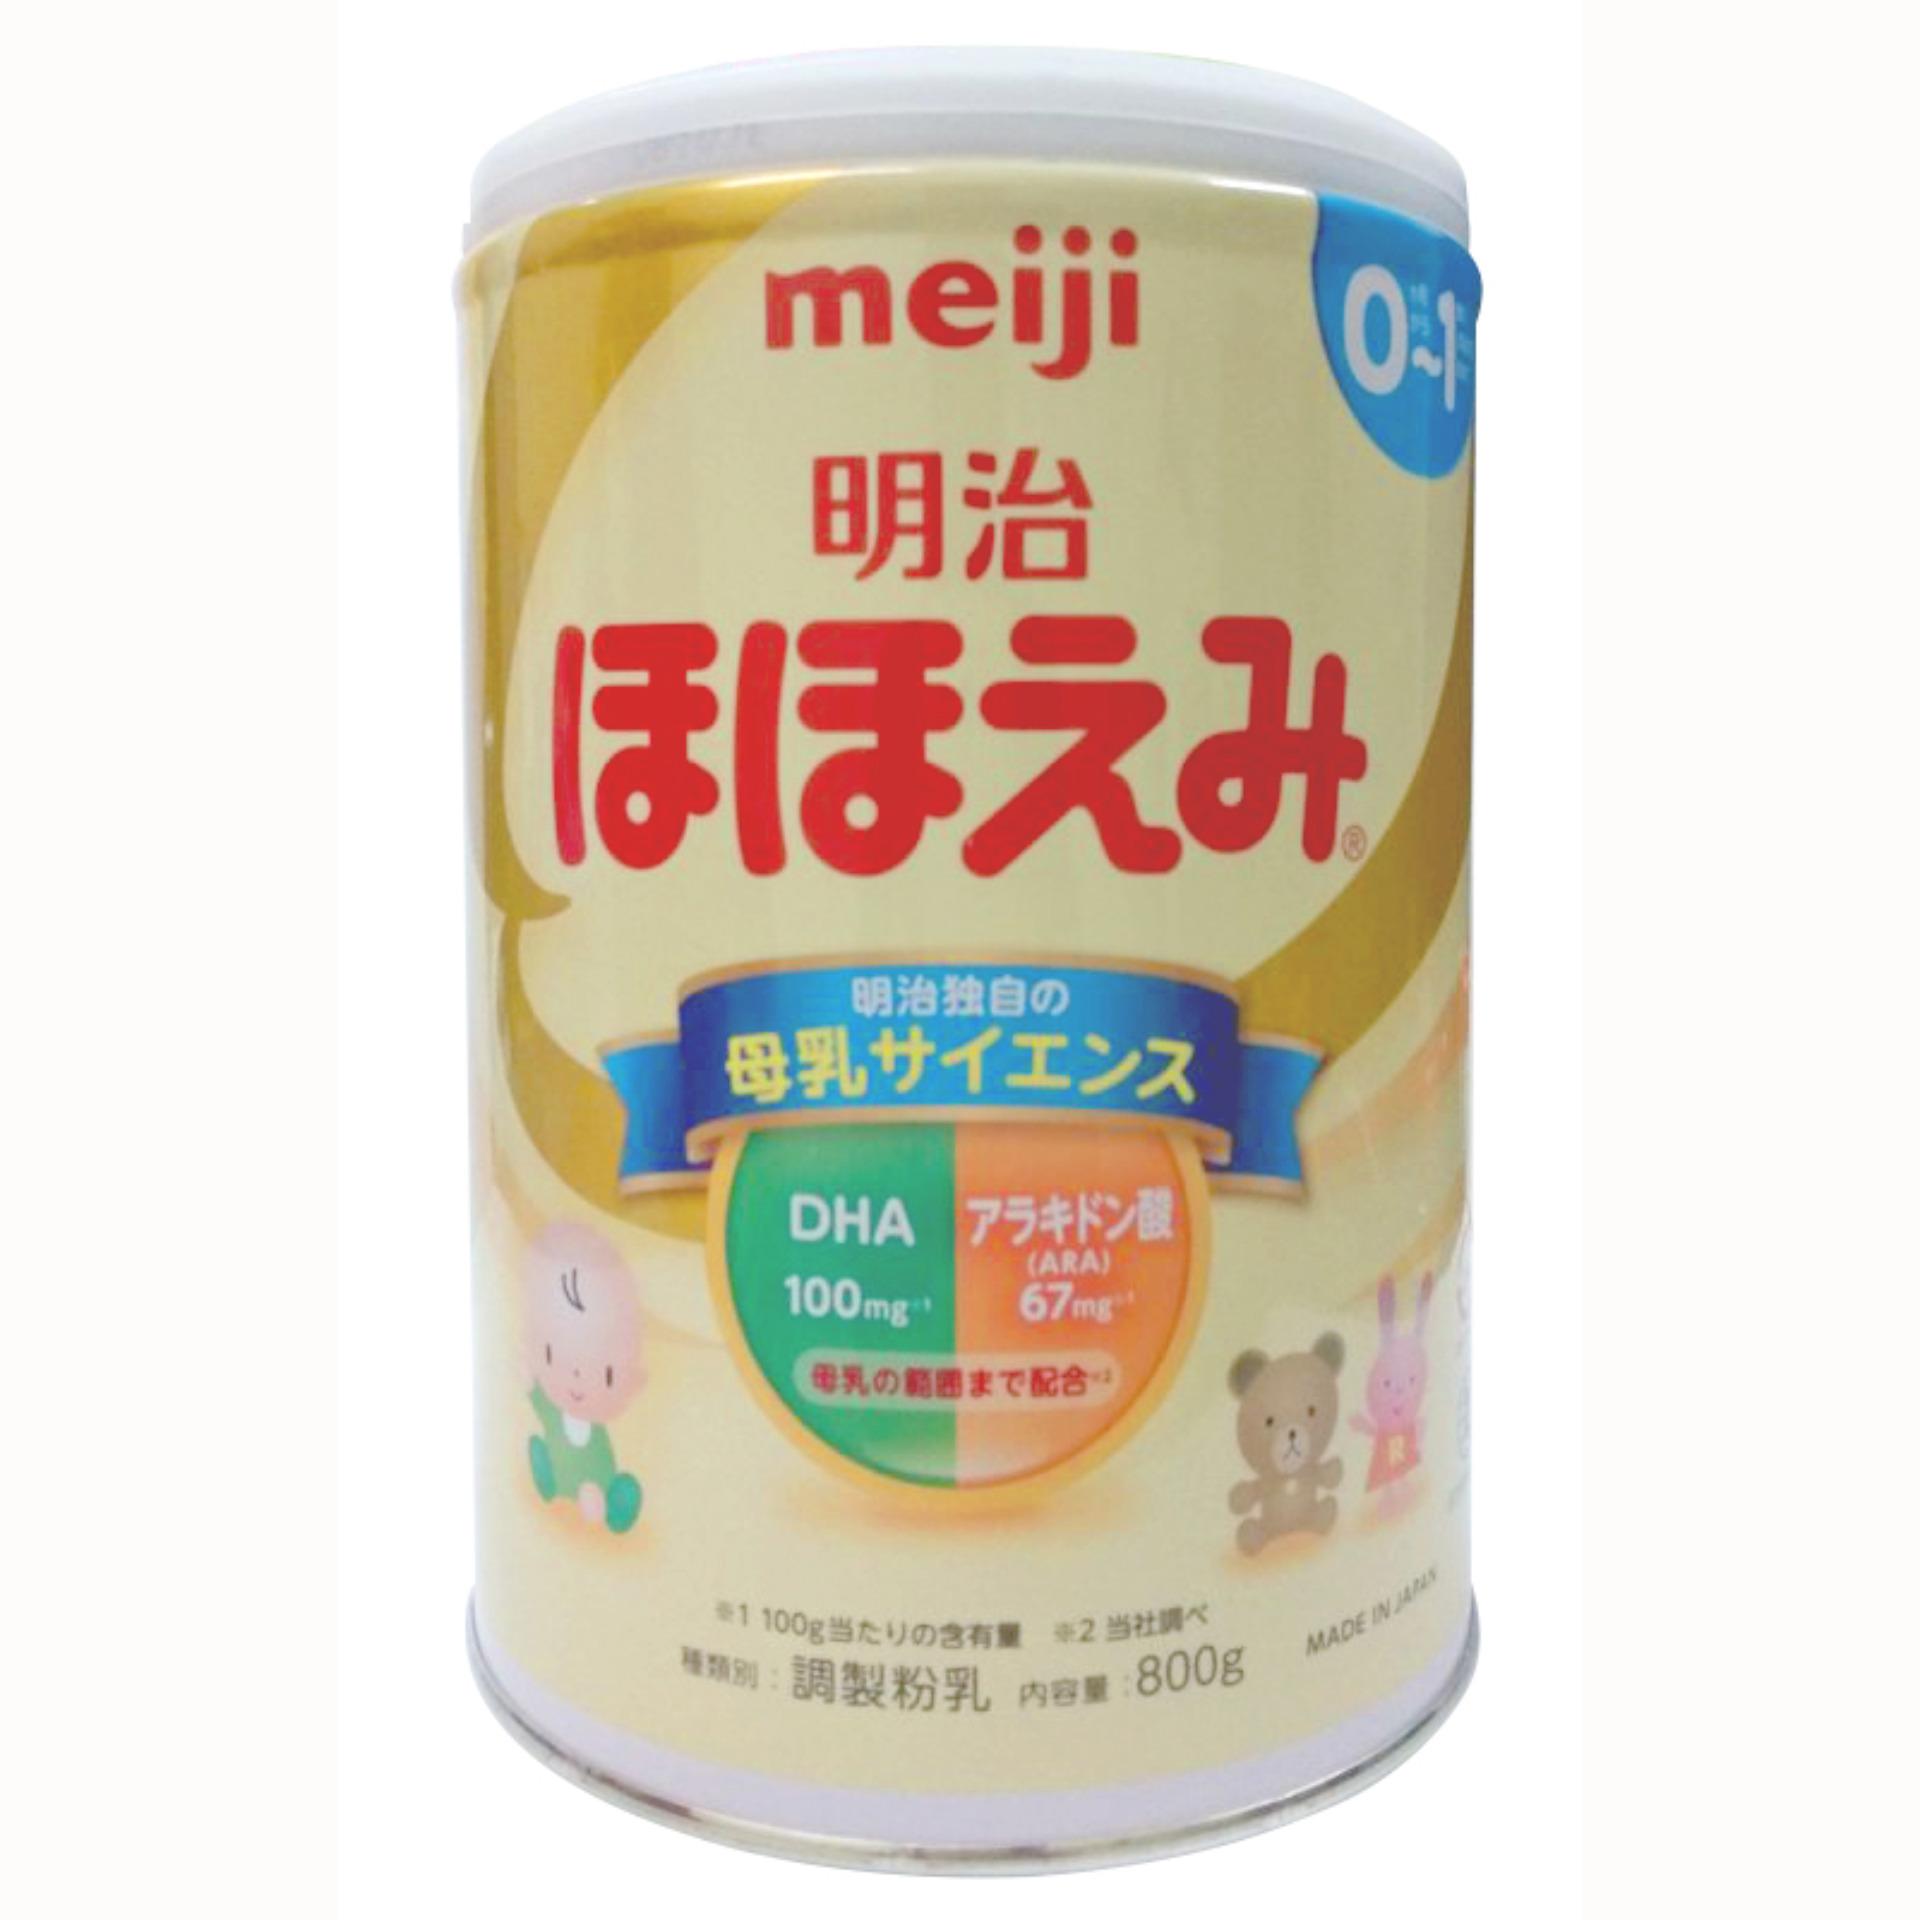 HCMSữa Meiji số 0 800g.